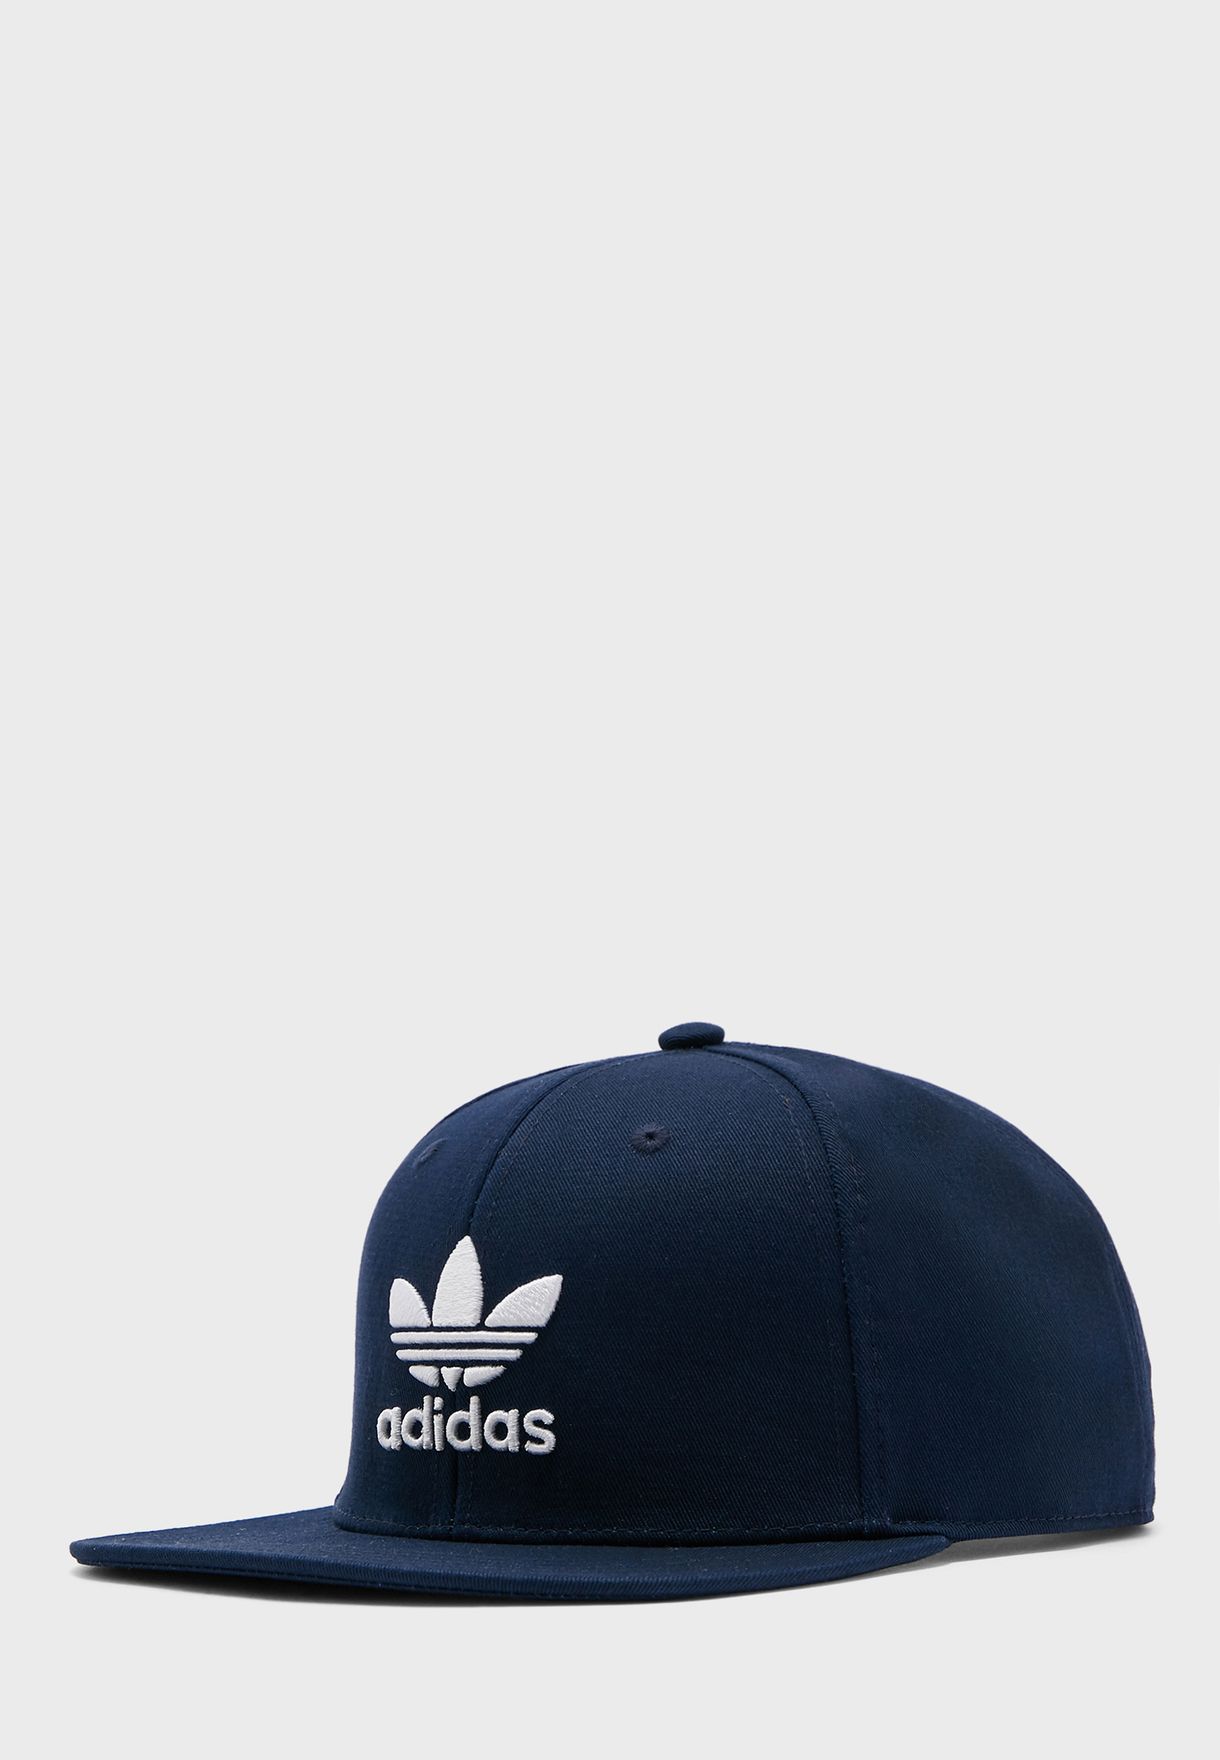 adidas classic cap